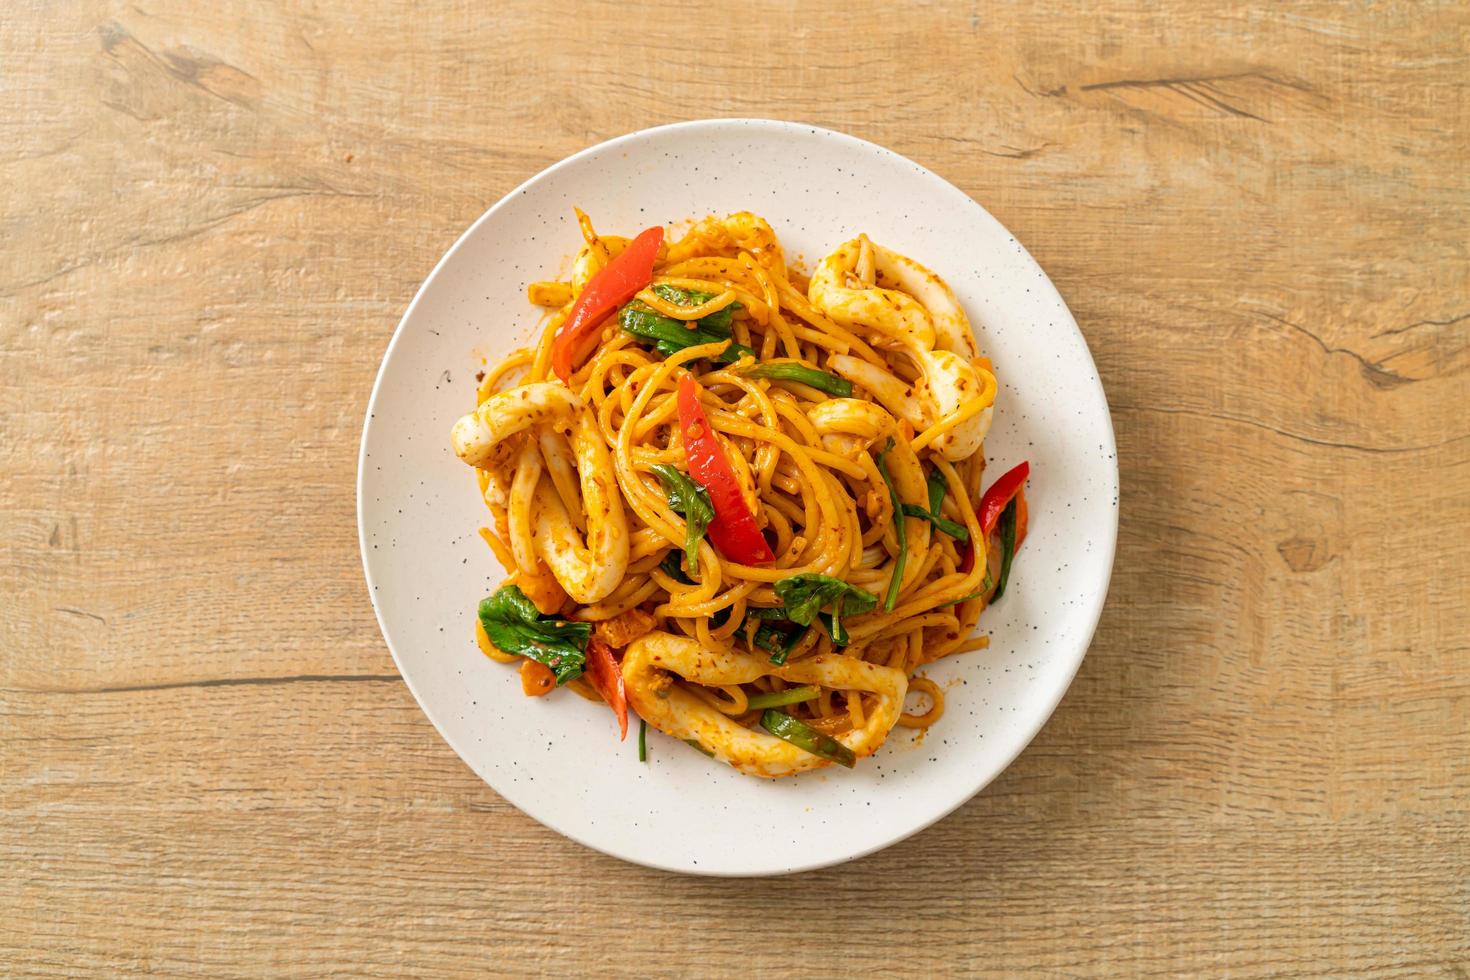 espaguetis salteados con huevo salado y calamares - estilo de comida fusión foto